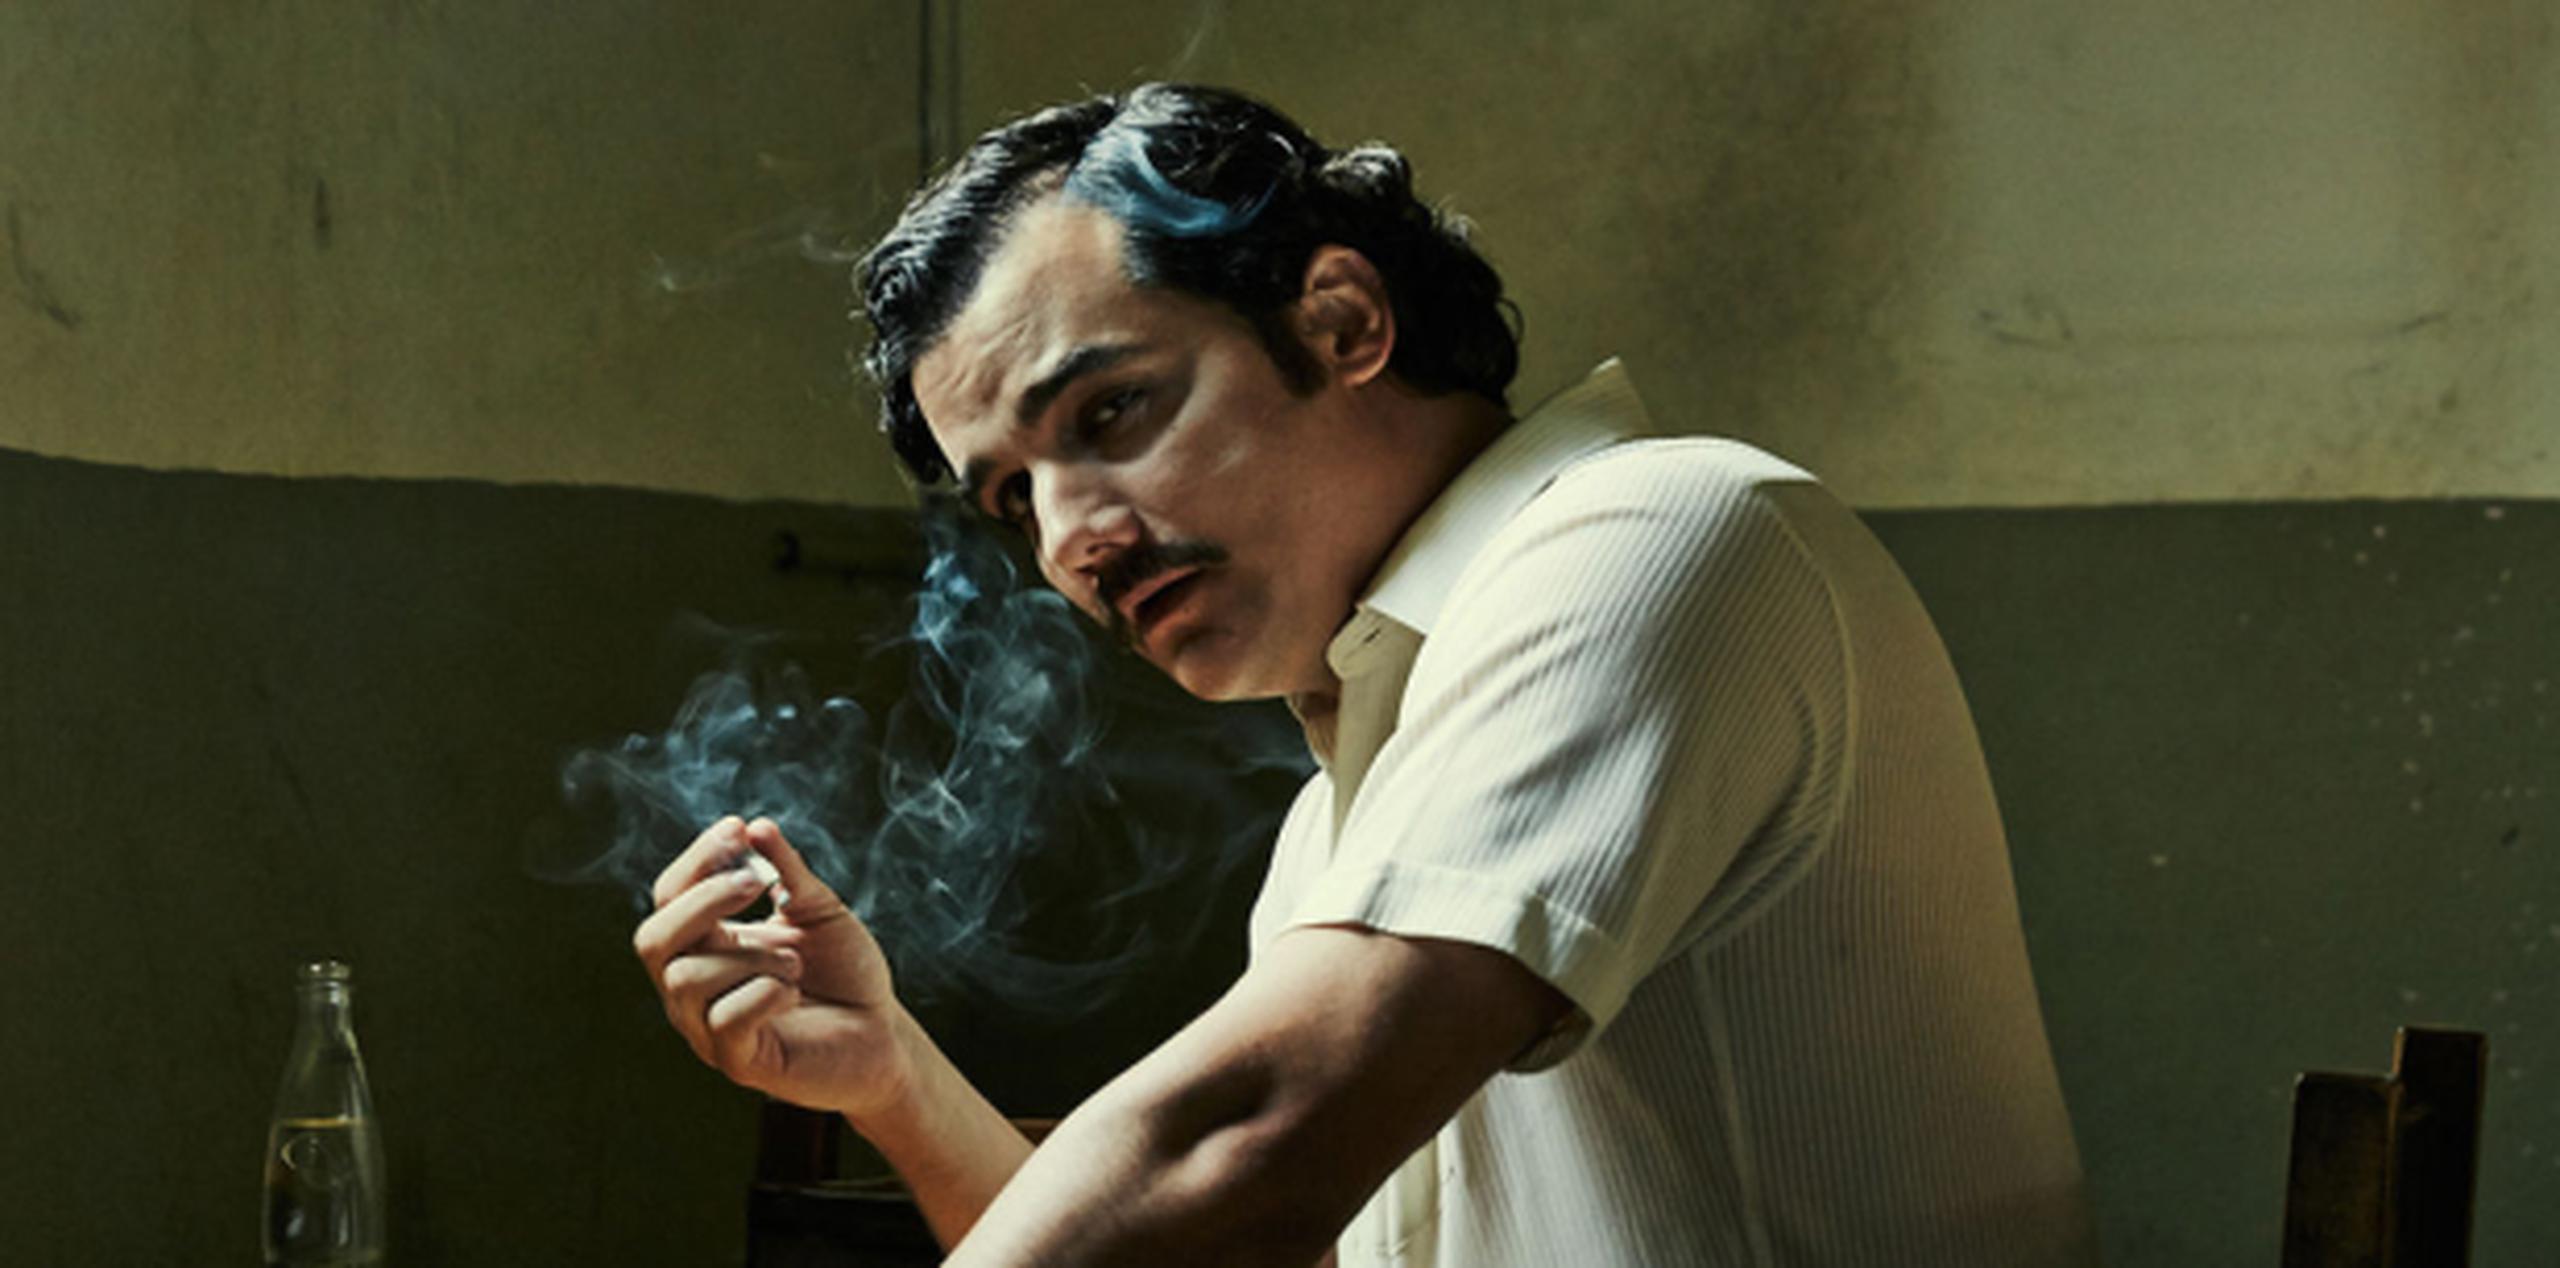 La serie "Narcos" explora la vida del narcotraficante Pablo Escobar. (Netflix)